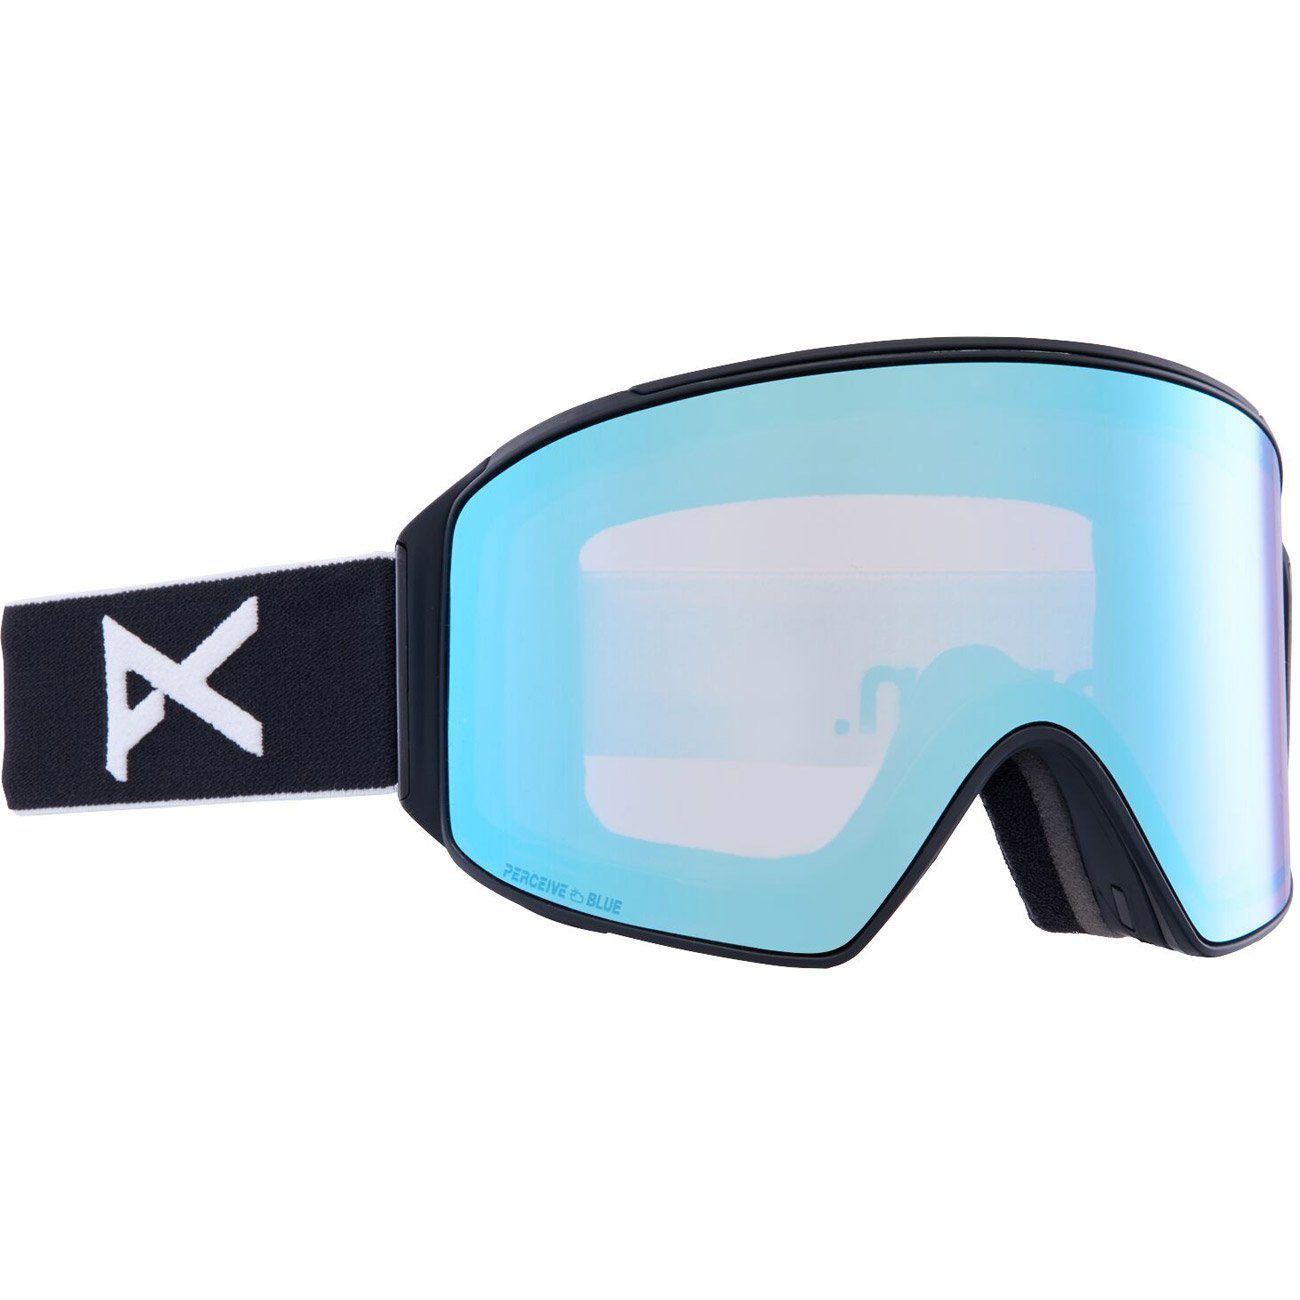 vrbl Snowboardbrille, CYLINDRICAL black/prcv blue M4 Anon